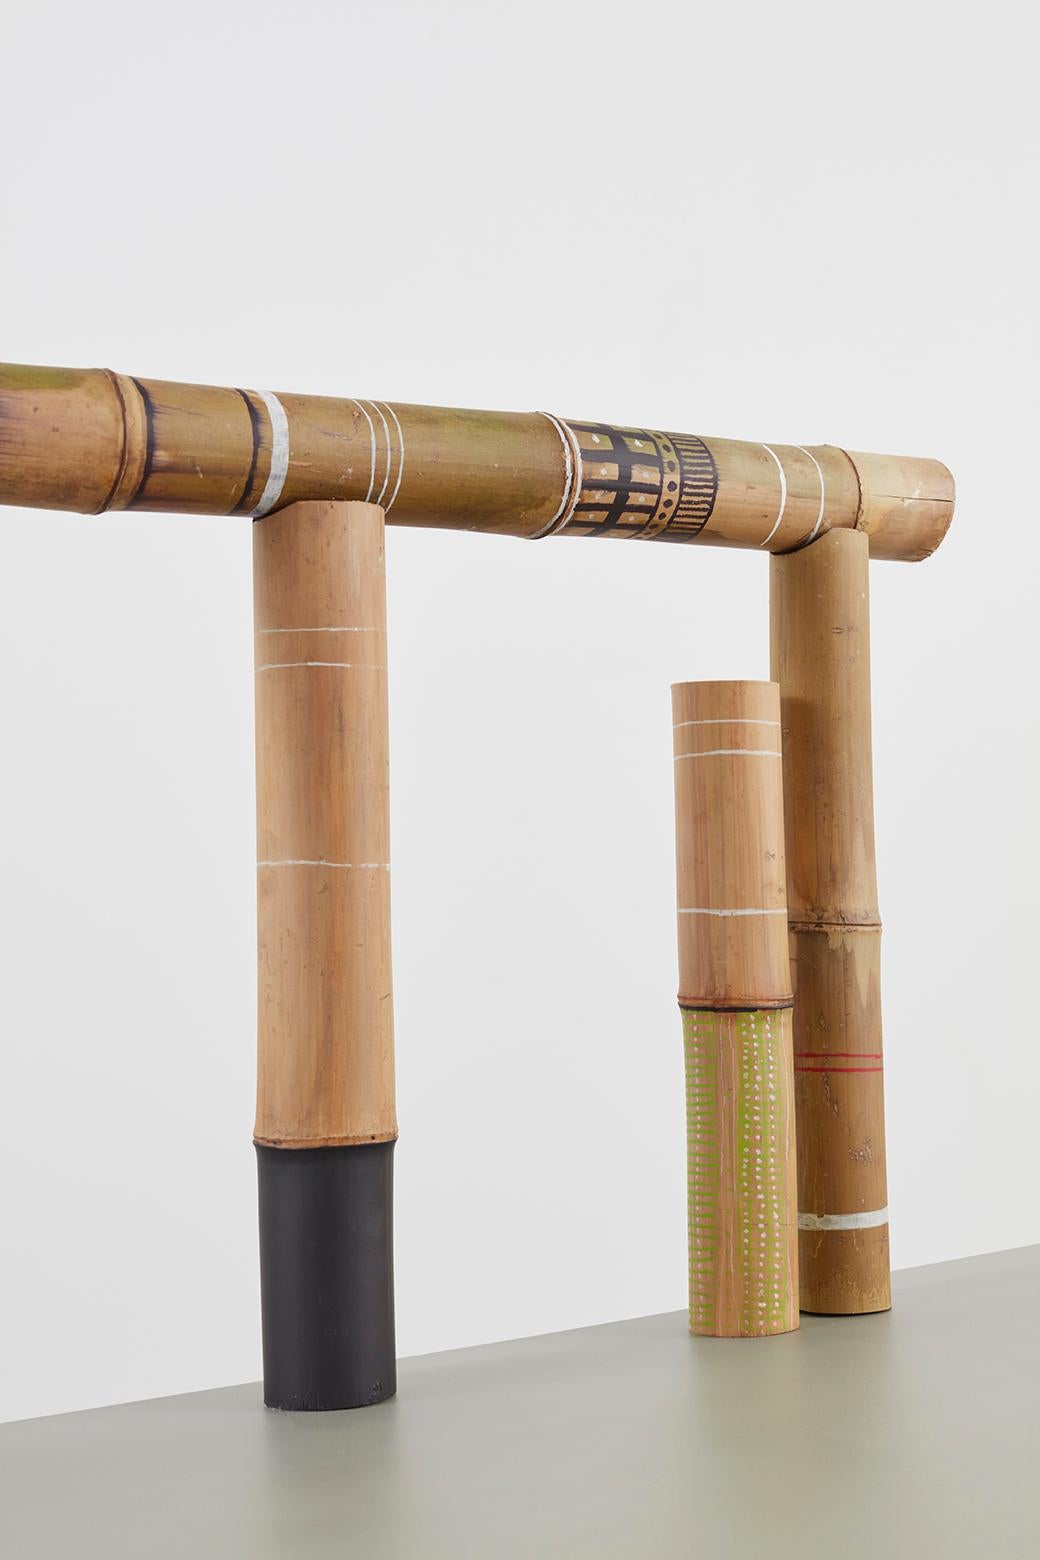 Contemporary Andrea Branzi, Bamboo 